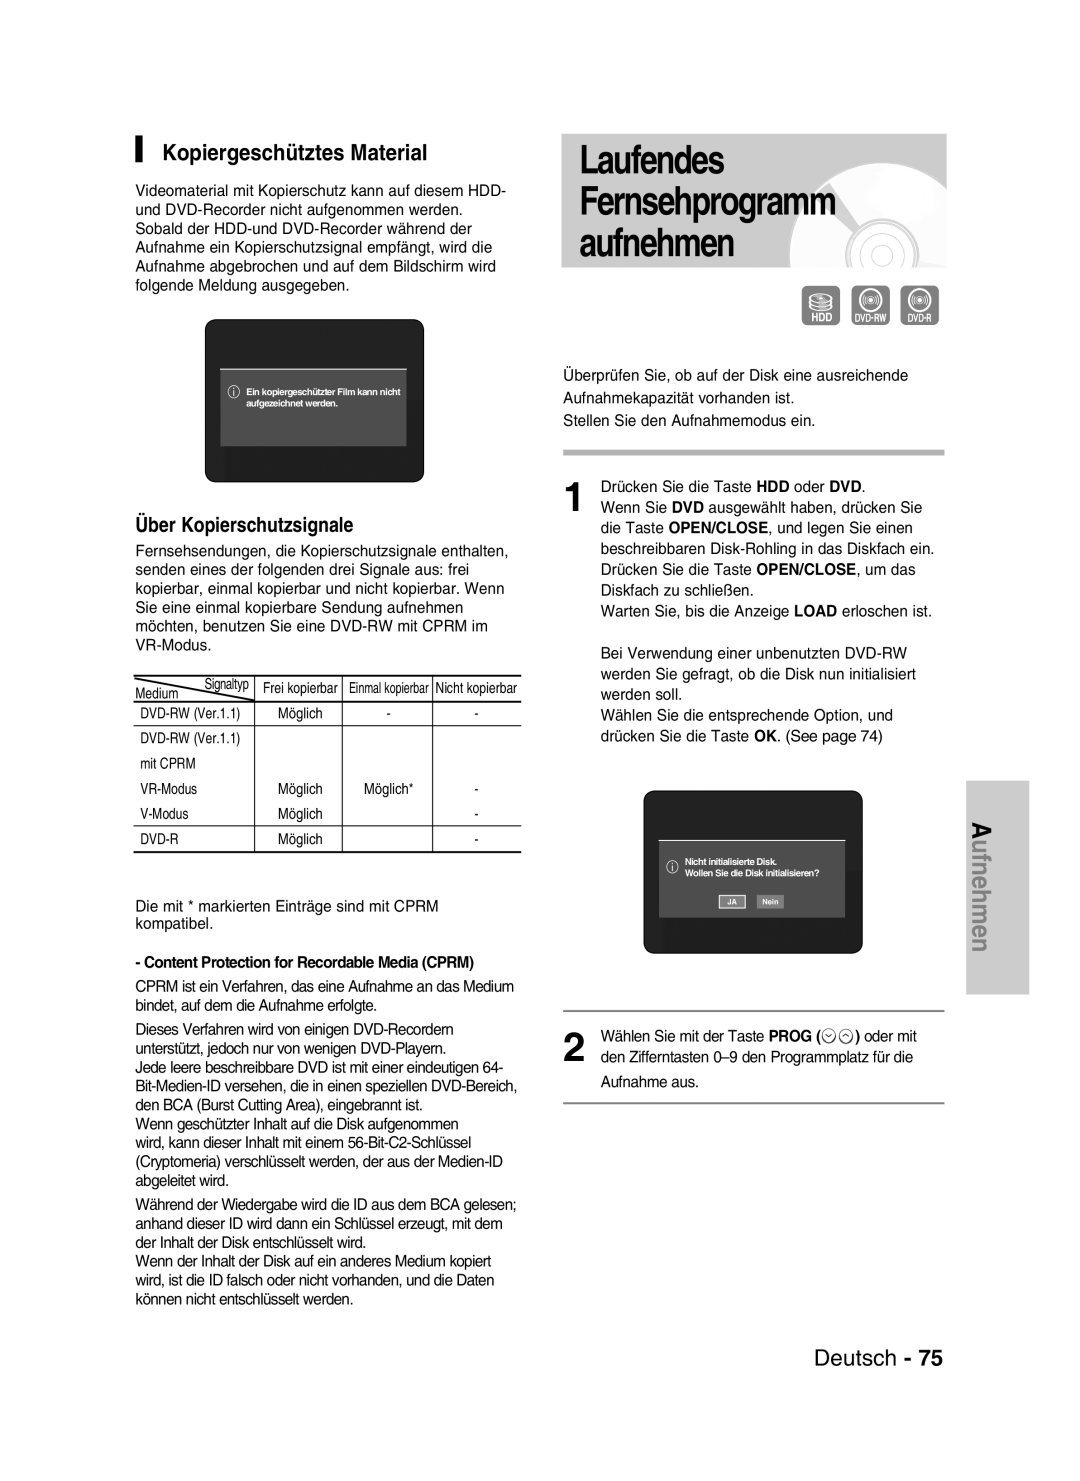 Samsung DVD-HR730/XEG Laufendes Fernsehprogramm aufnehmen, Kopiergeschütztes Material, Über Kopierschutzsignale, Deutsch 